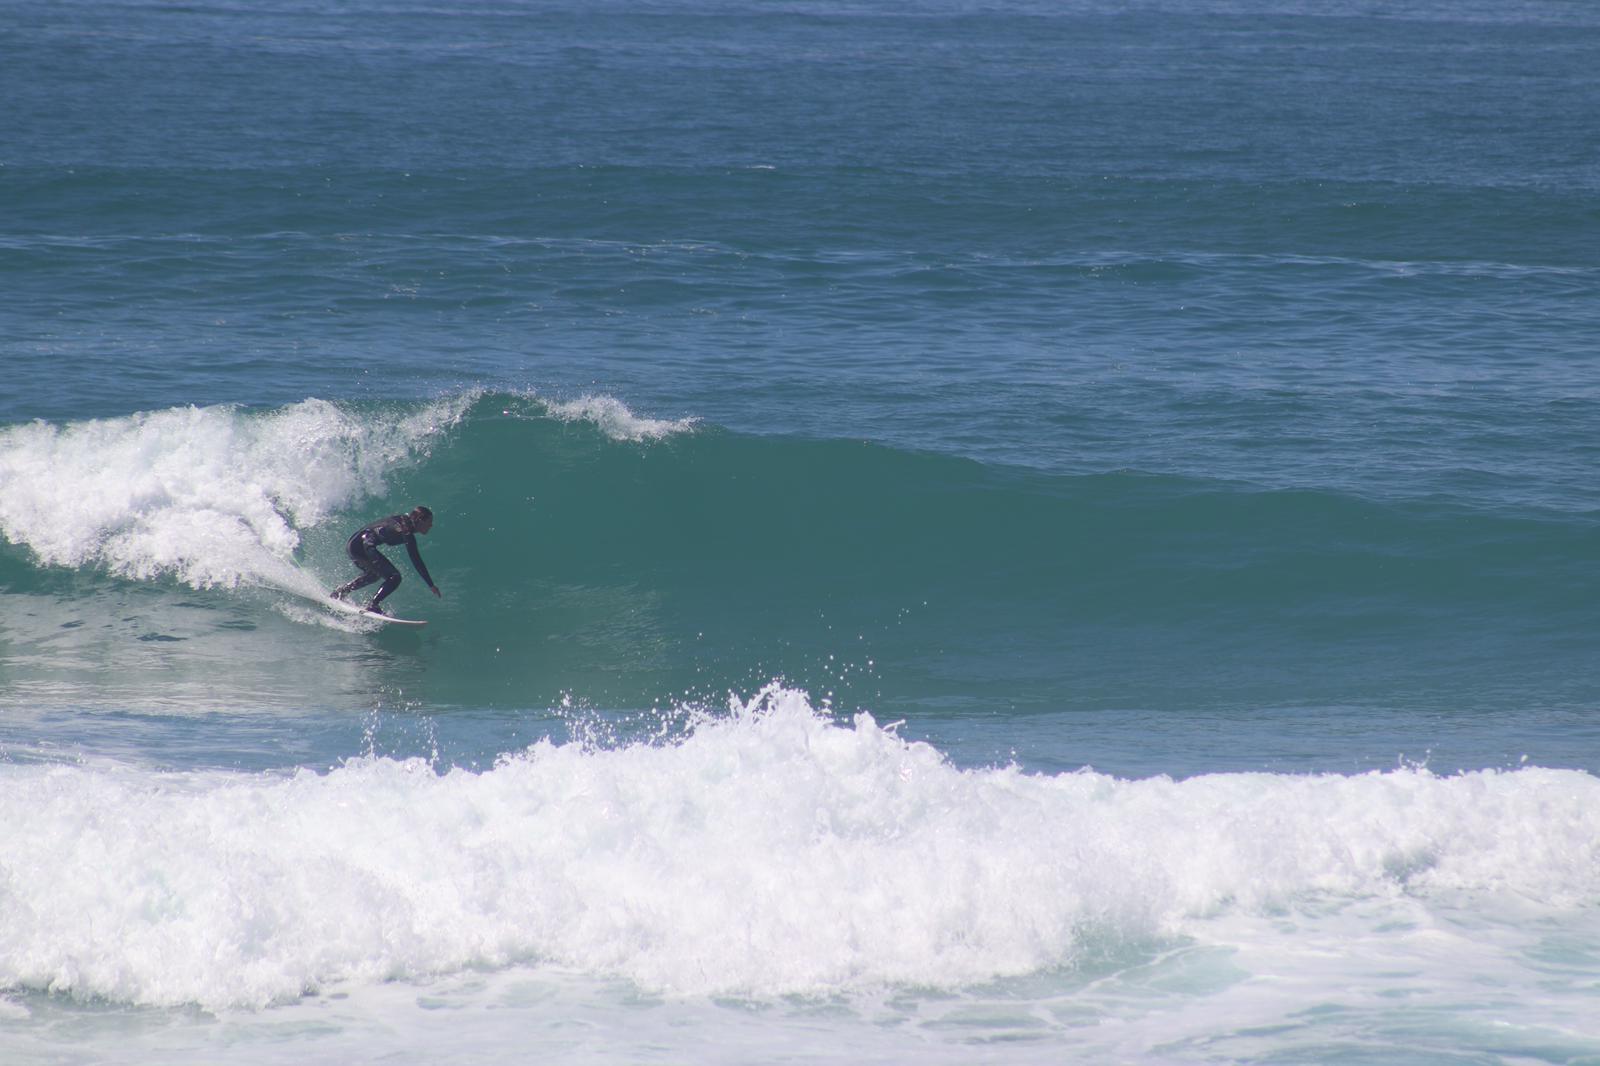 Portogallo surf onde 